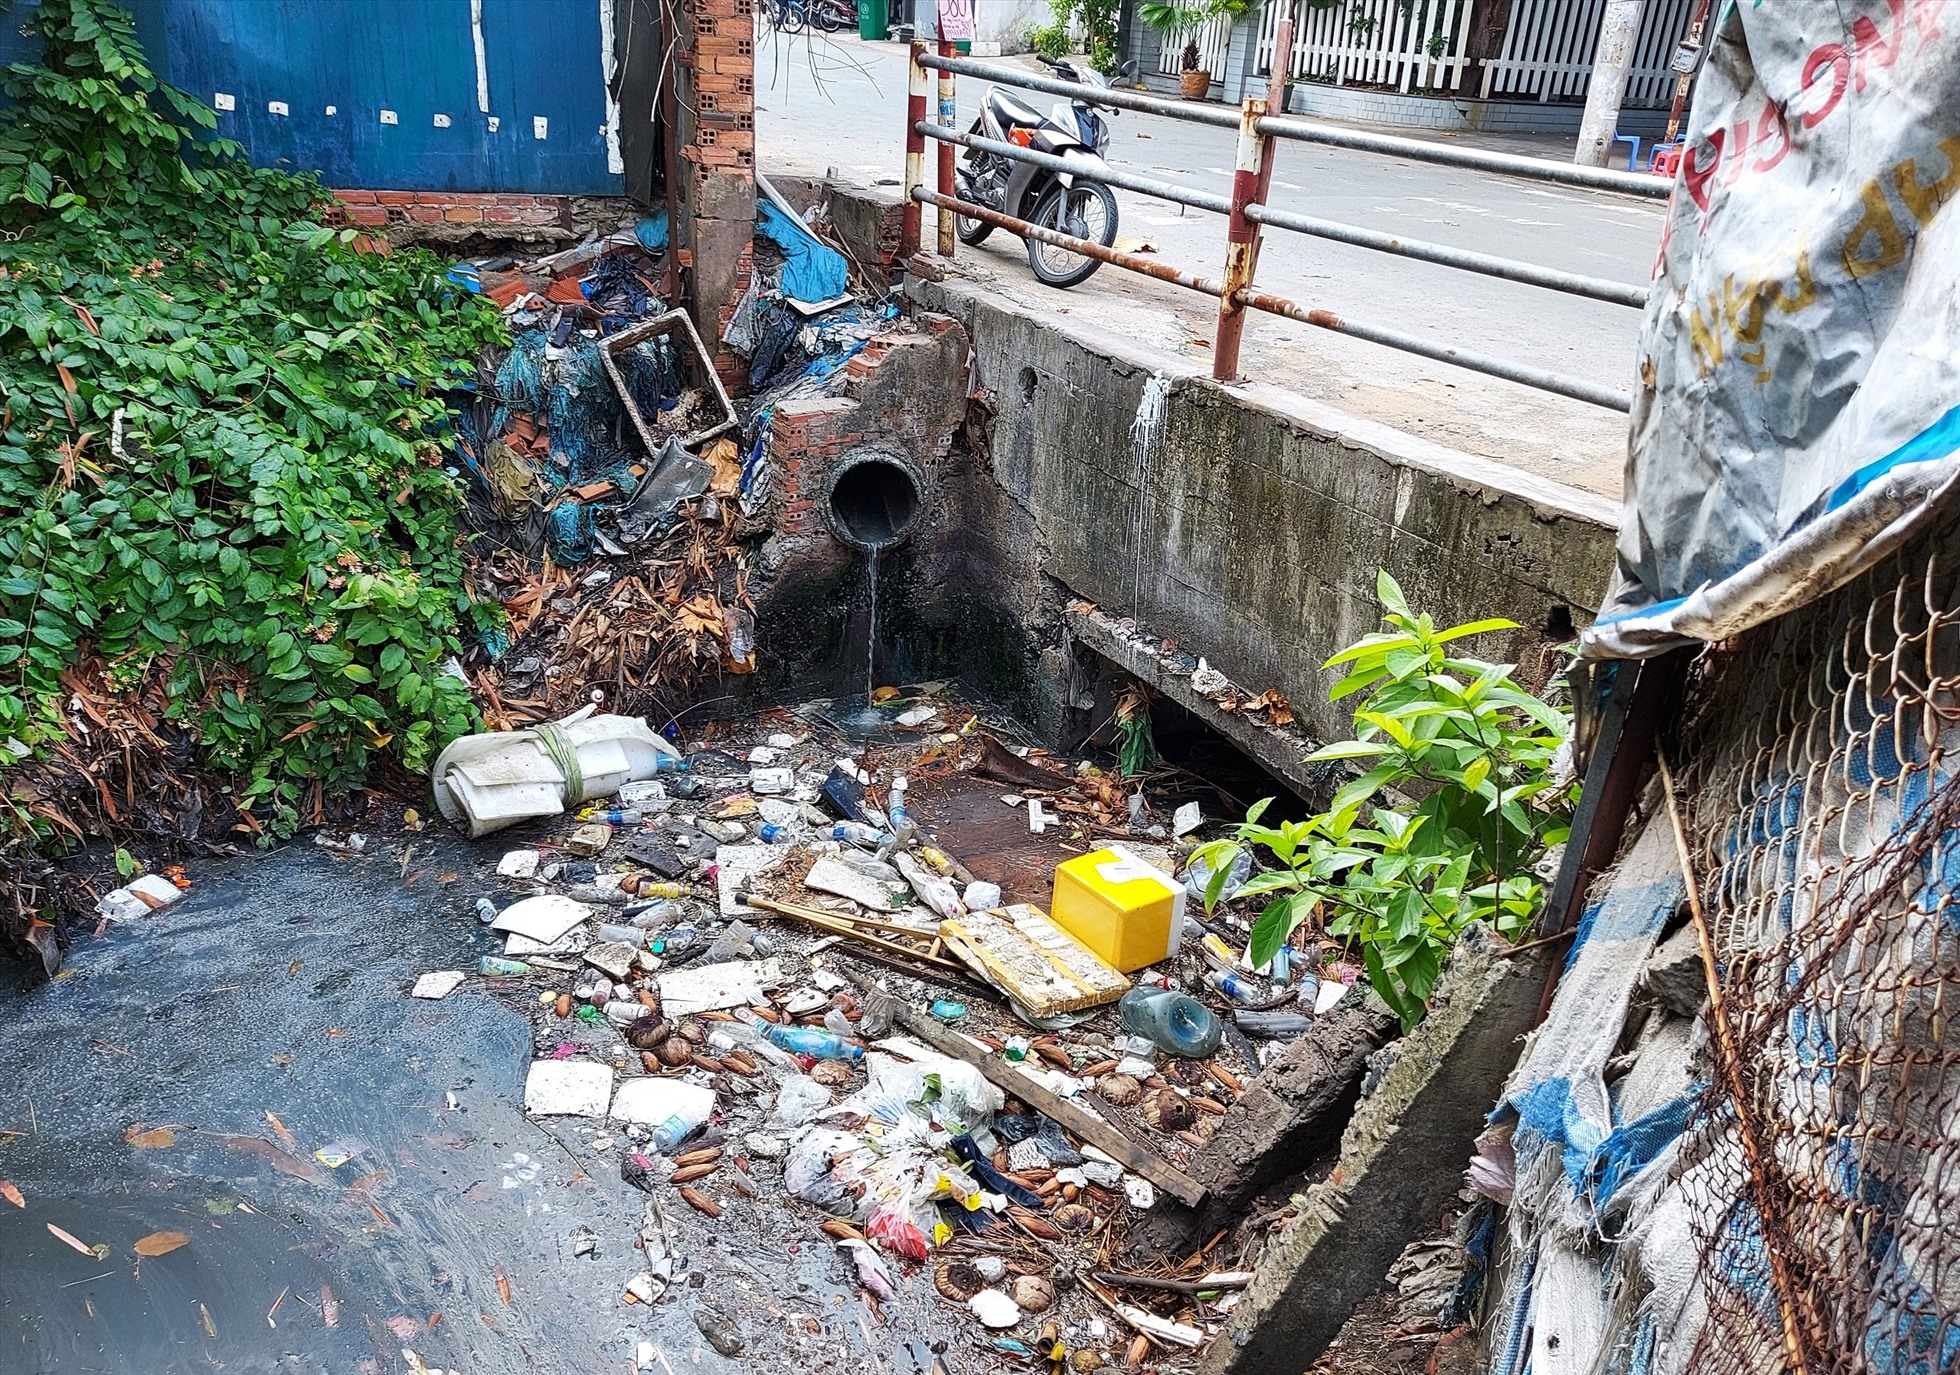 Tương tự, cống thoát nước kênh A41 đoạn chảy qua đường Giải Phóng (quận Tân Bình) cũng bị bức tử bởi rác thải.